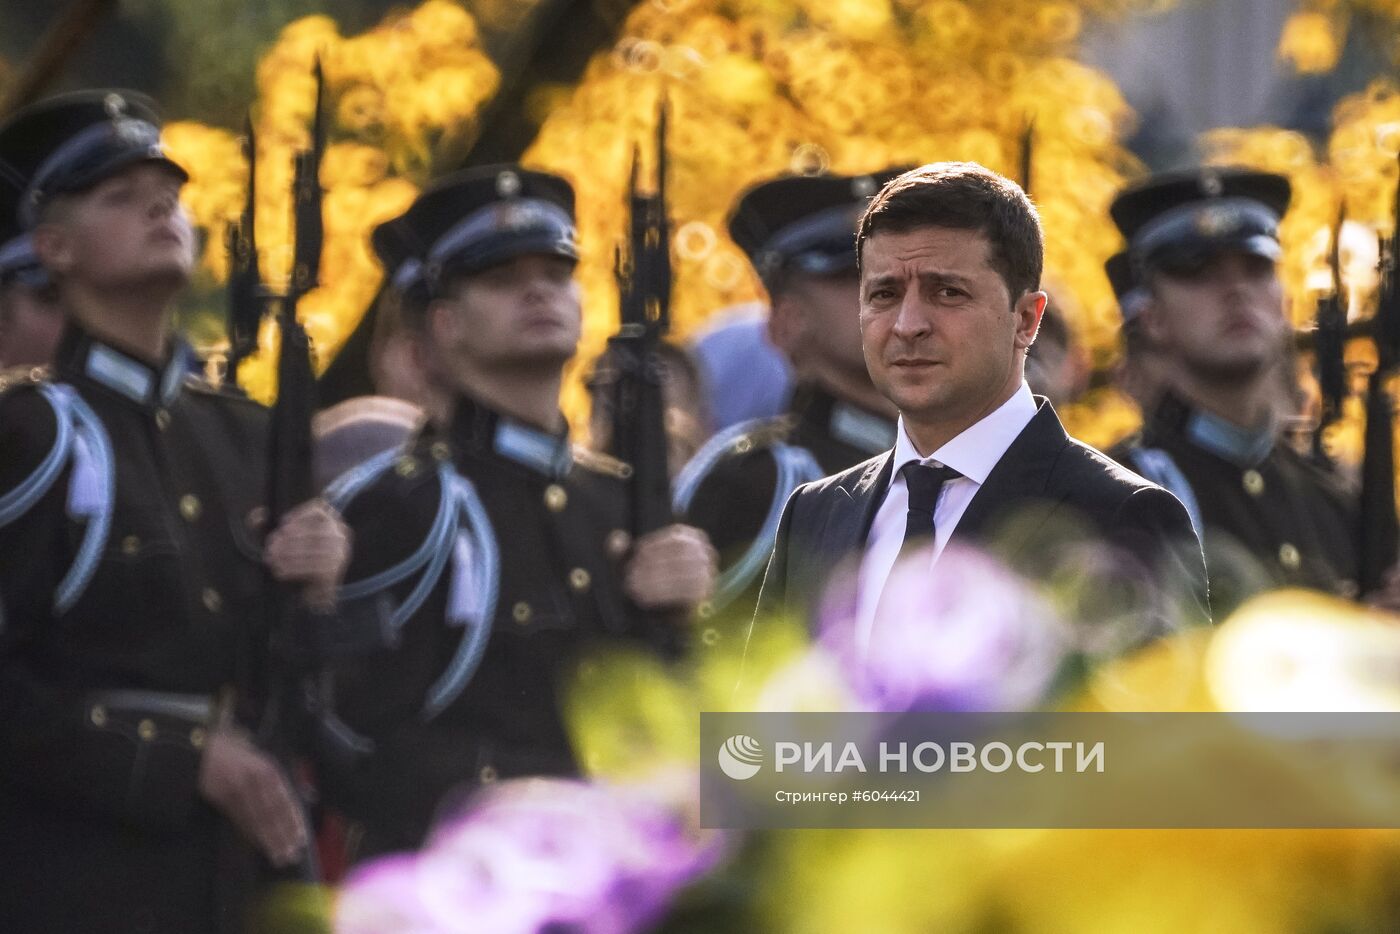 Визит президента Украины В. Зеленского в Ригу